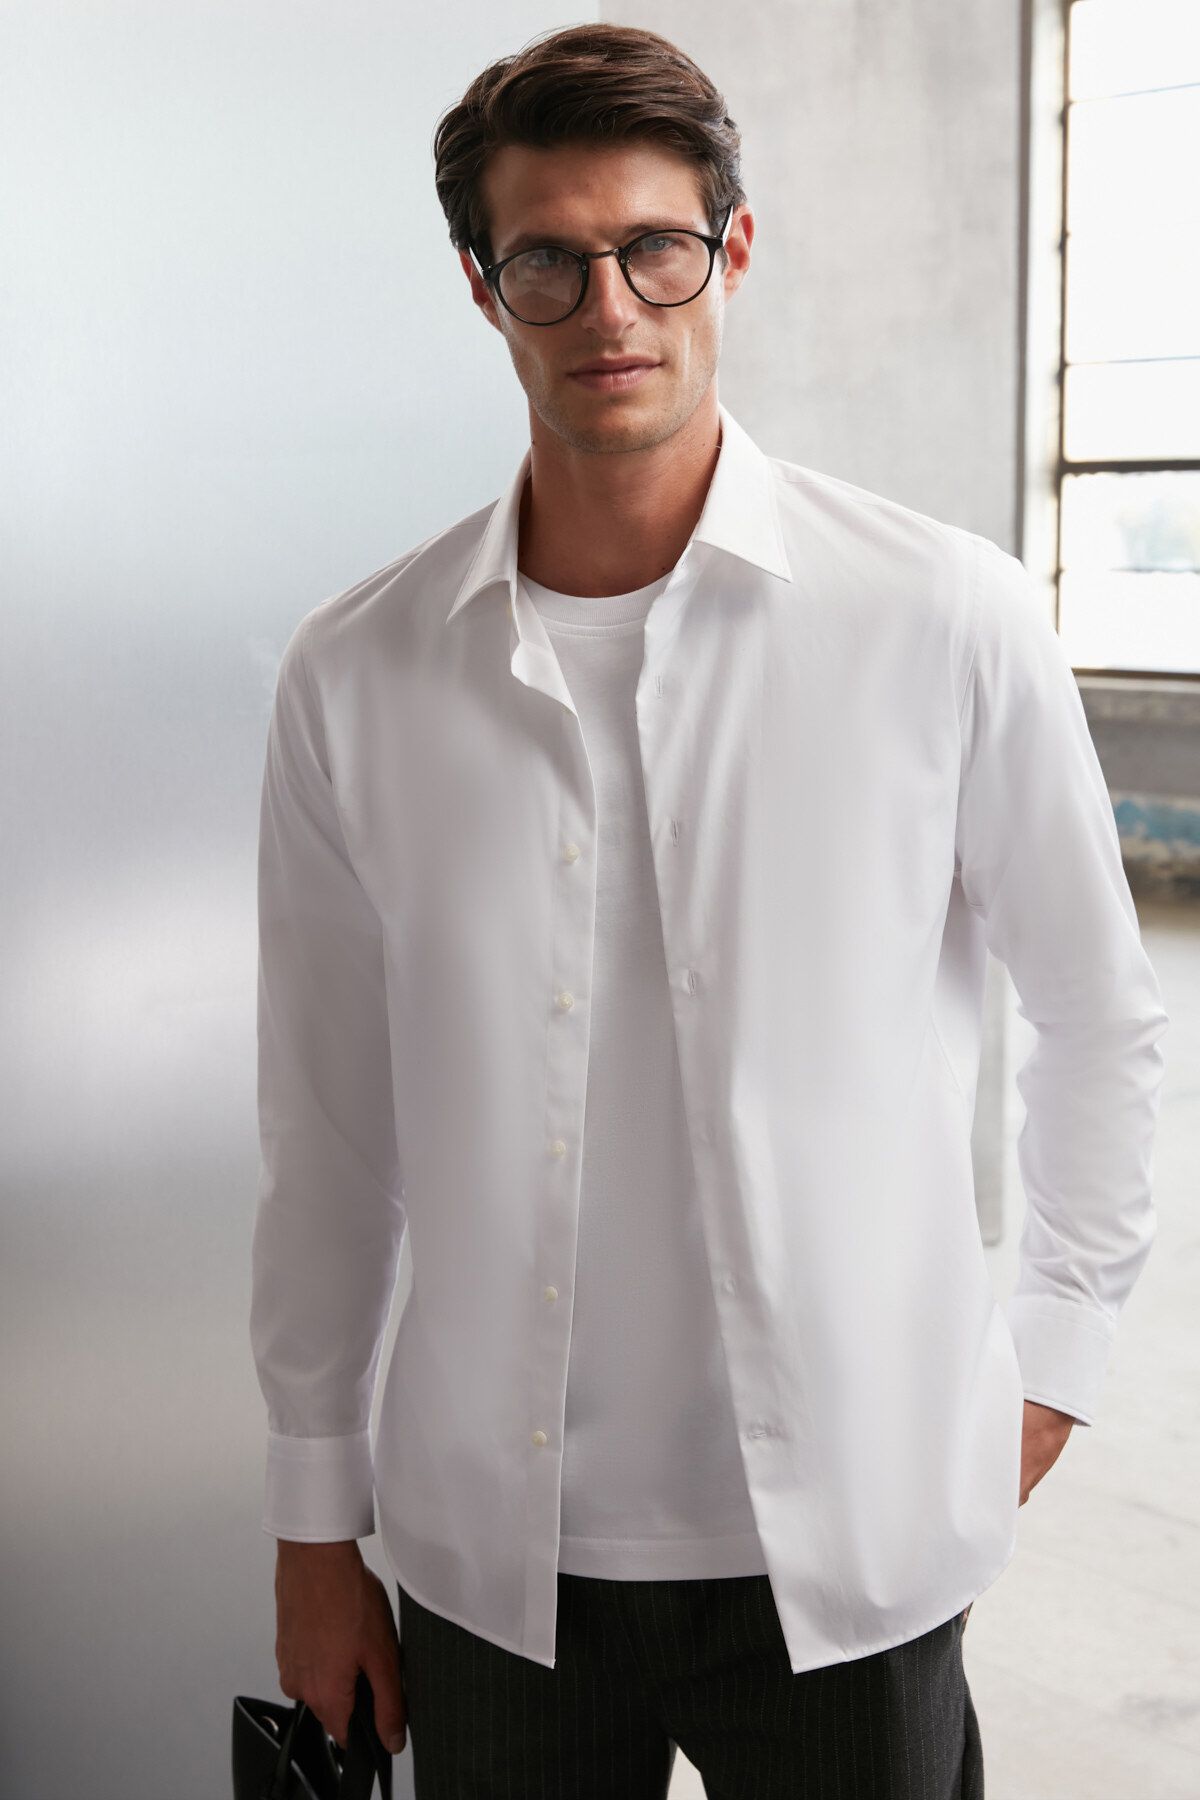 GRIMELANGE Carlsten Erkek Slim Fit Italyan Yaka %100 Pamuk Poplin Beyaz Gömlek